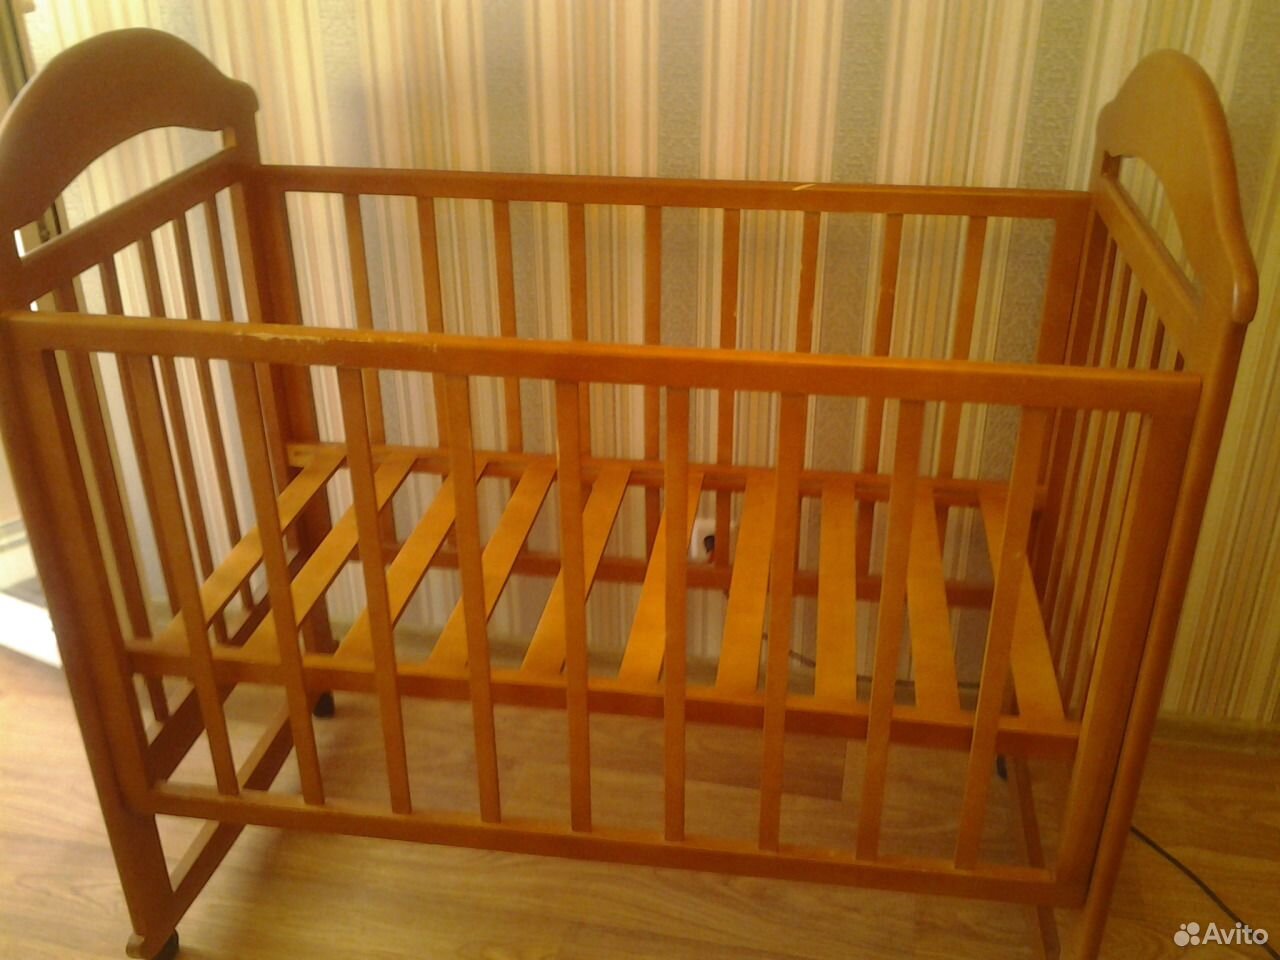 Авито куплю детскую кроватку б у. Кроватка детская деревянная. Детская кроватка простая. Детская кроватка деревянная обычная. Кроватка для новорожденного деревянная простая.